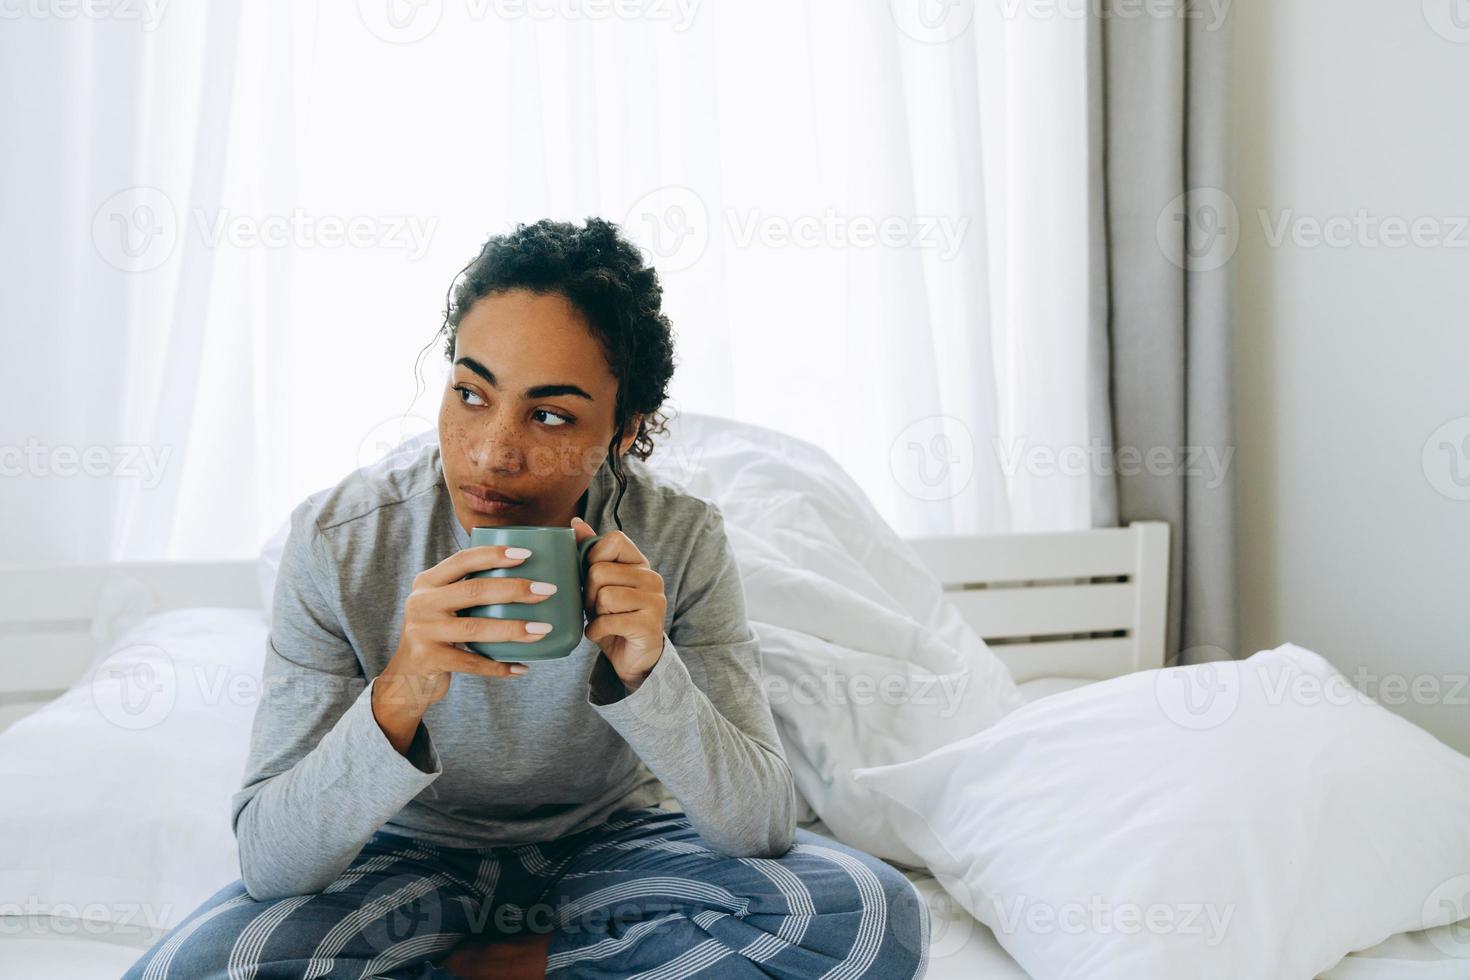 koncentrerad afrikansk kvinna dricker kaffe och tittar åt sidan foto